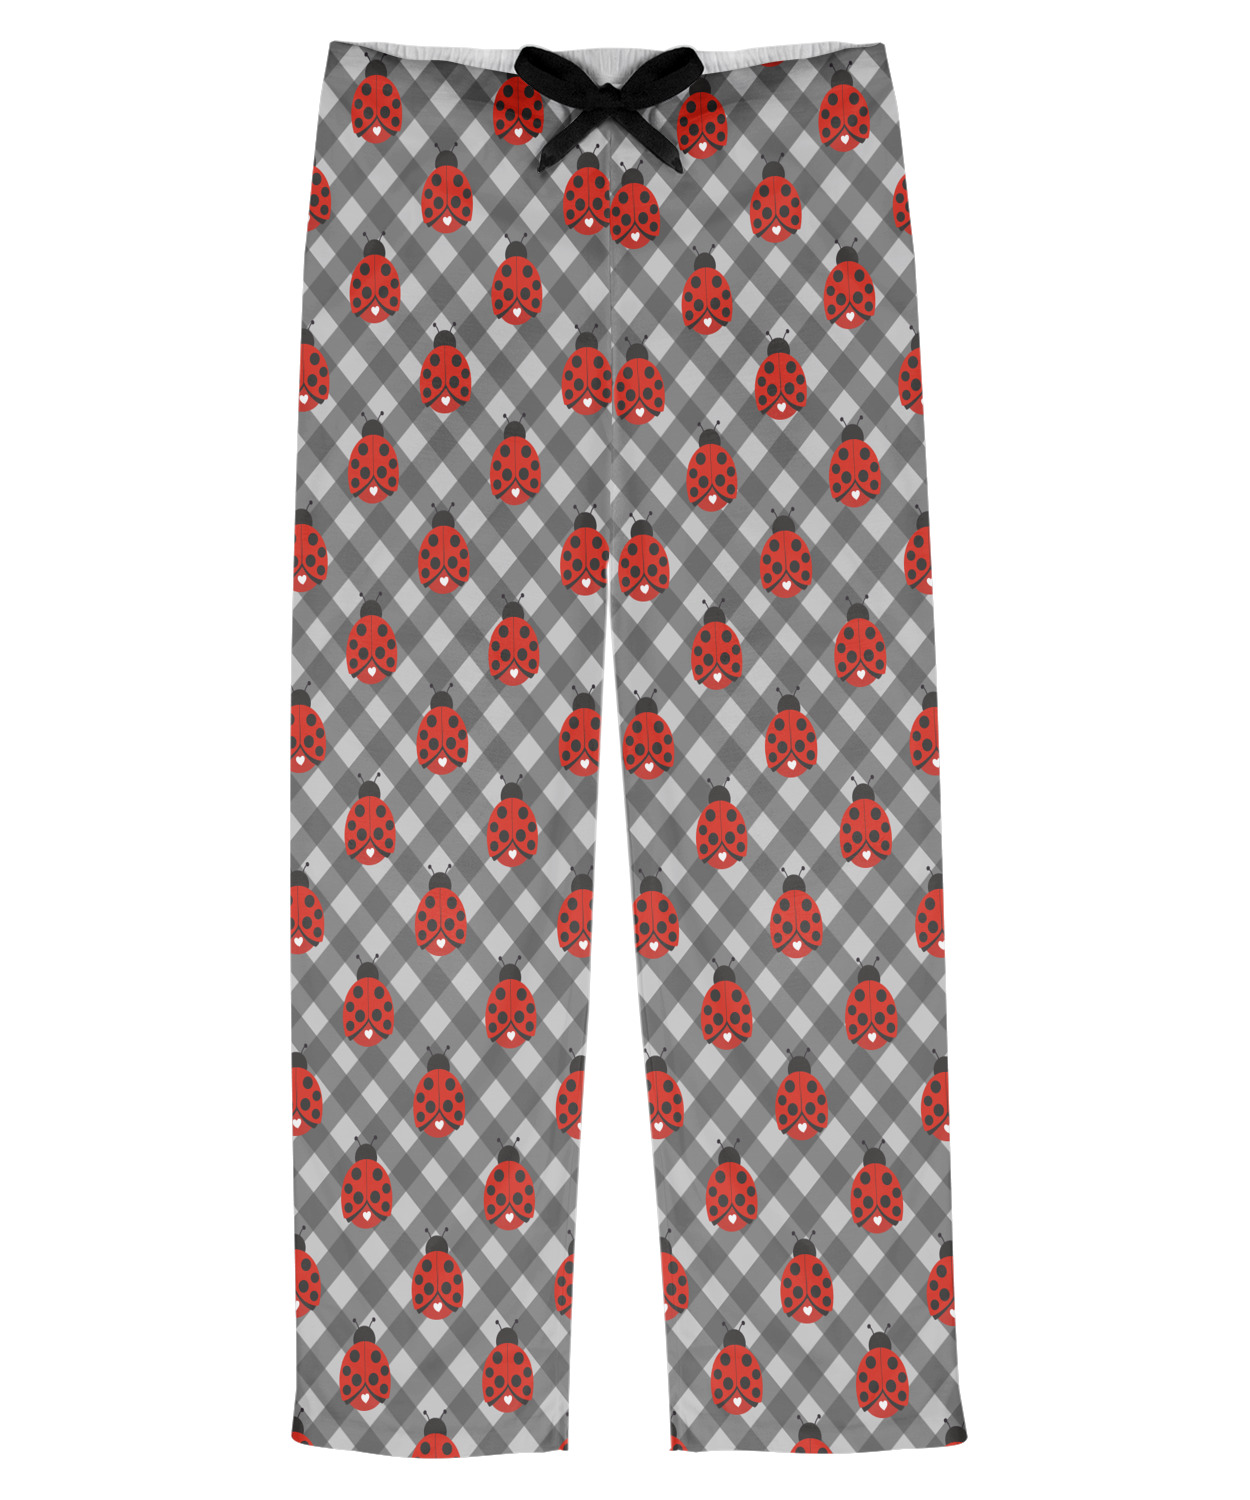 Ladybugs & Gingham Mens Pajama Pants - S (Personalized) - YouCustomizeIt